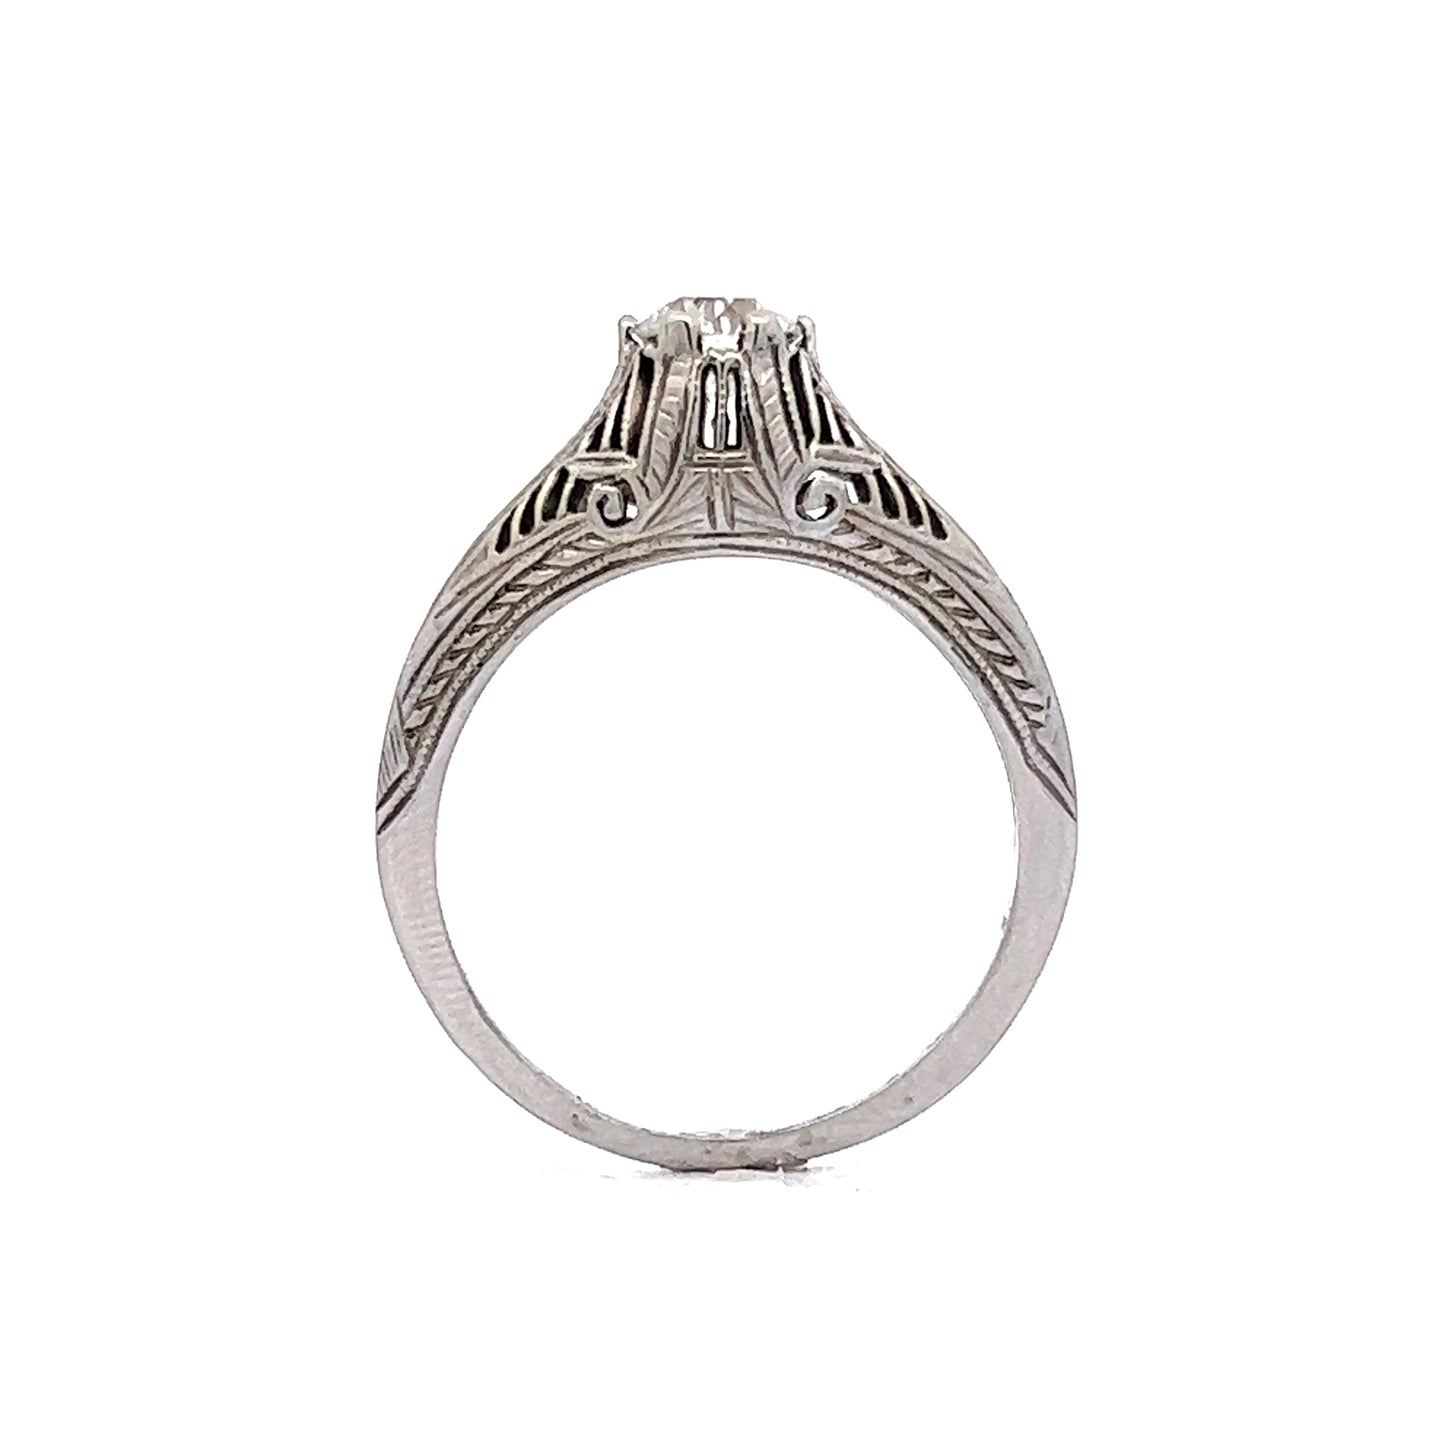 Antique Solitaire Diamond Ring Art Deco Filigree in 18k